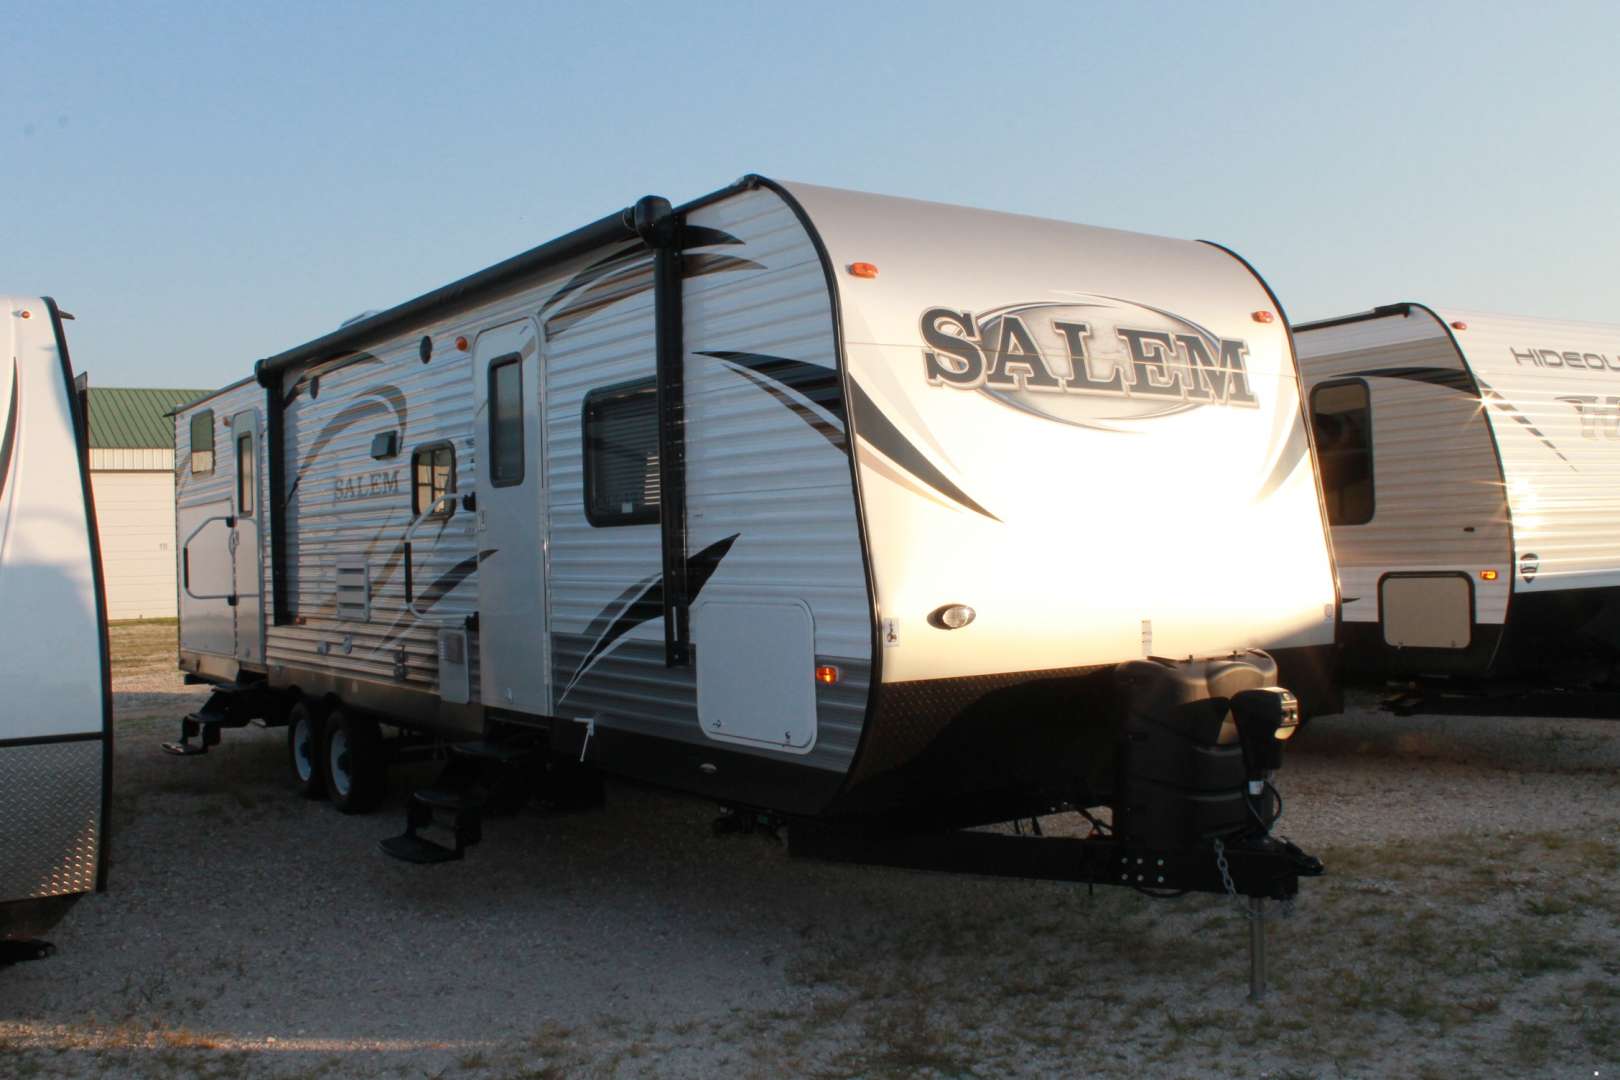 32 ft salem travel trailer